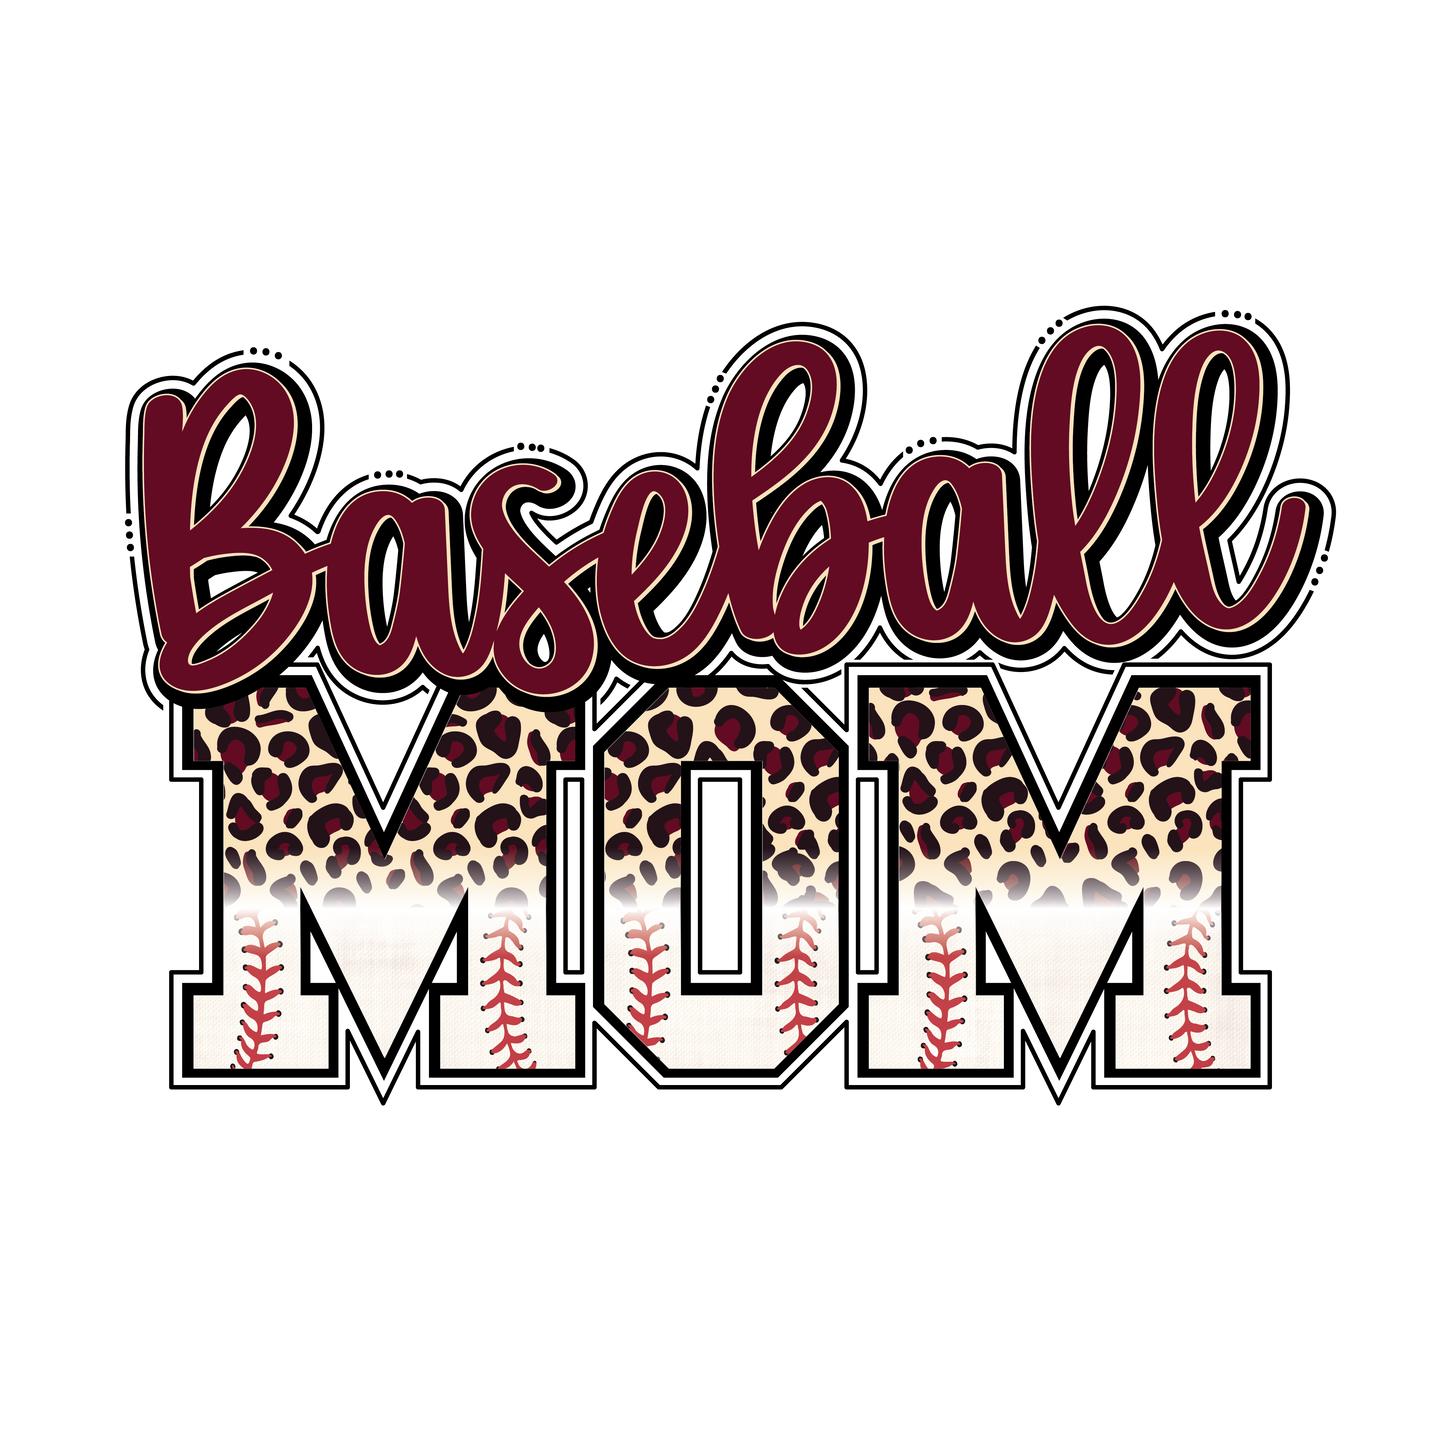 Maroon Baseball Mom Transfer